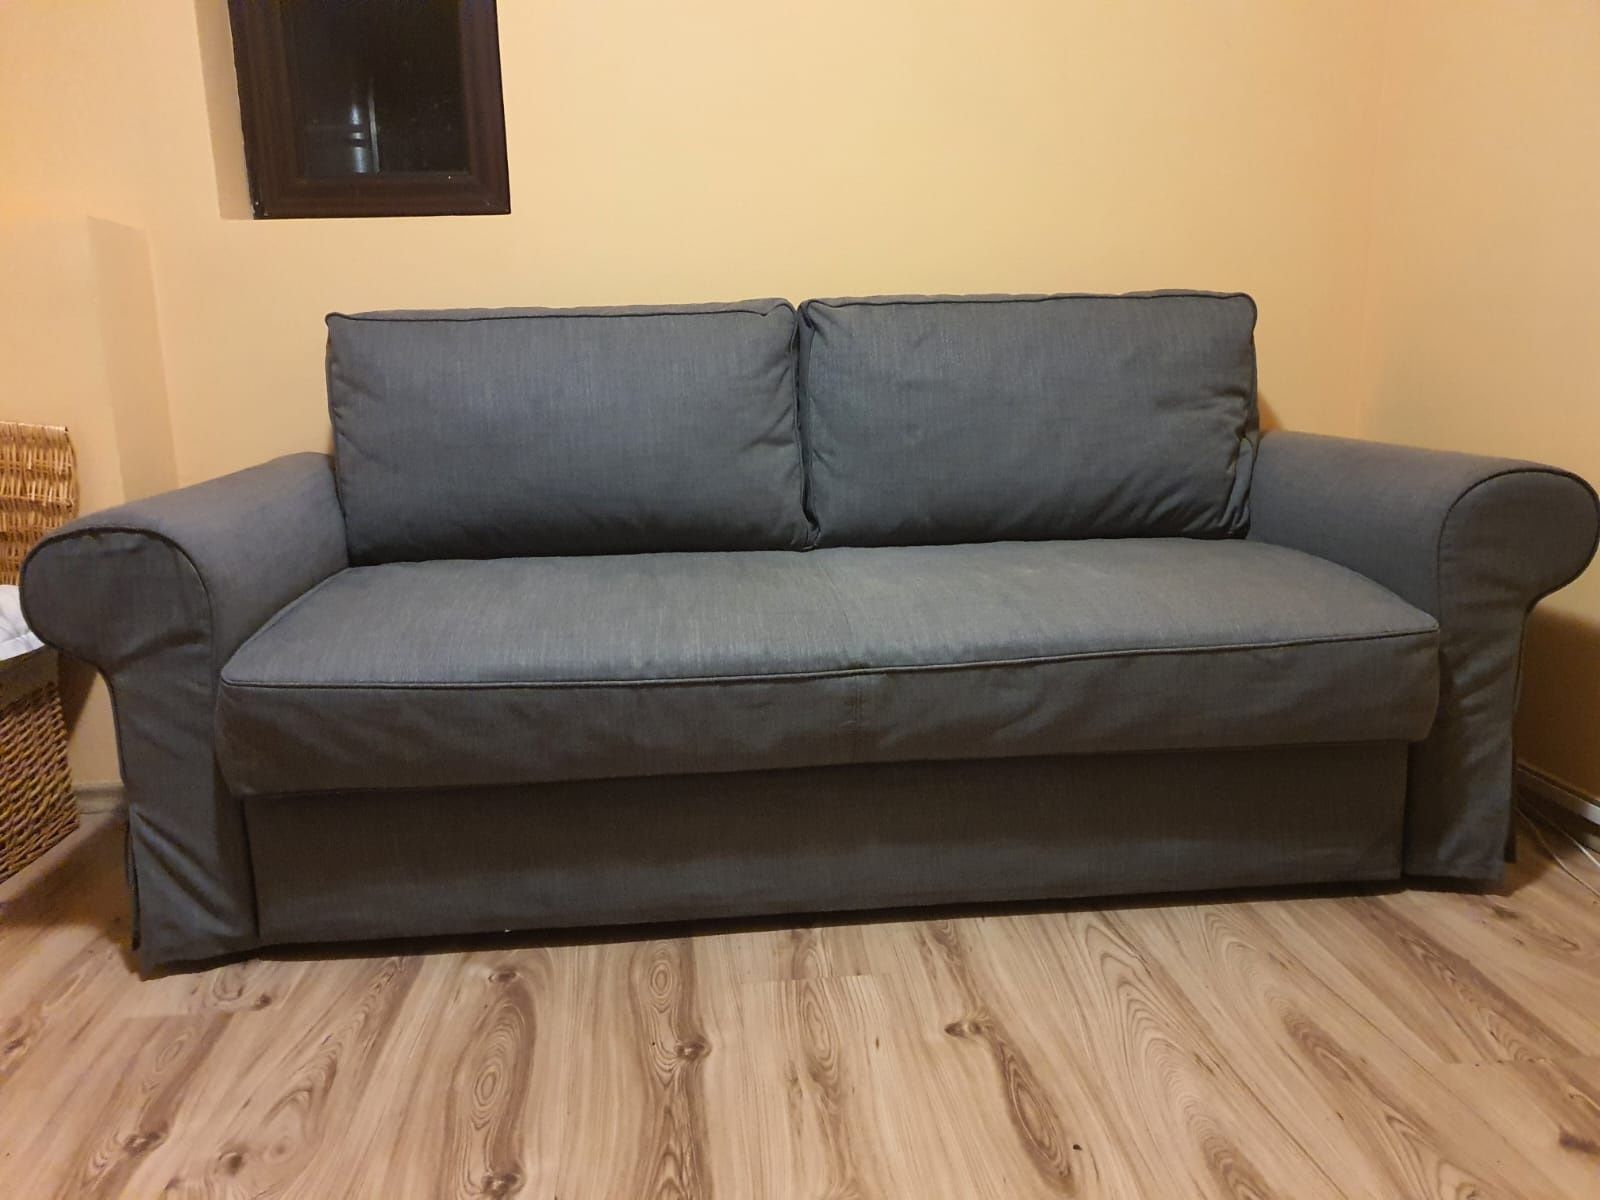 Canapea extensibilă 2 locuri - IKEA (GRÖNLID)